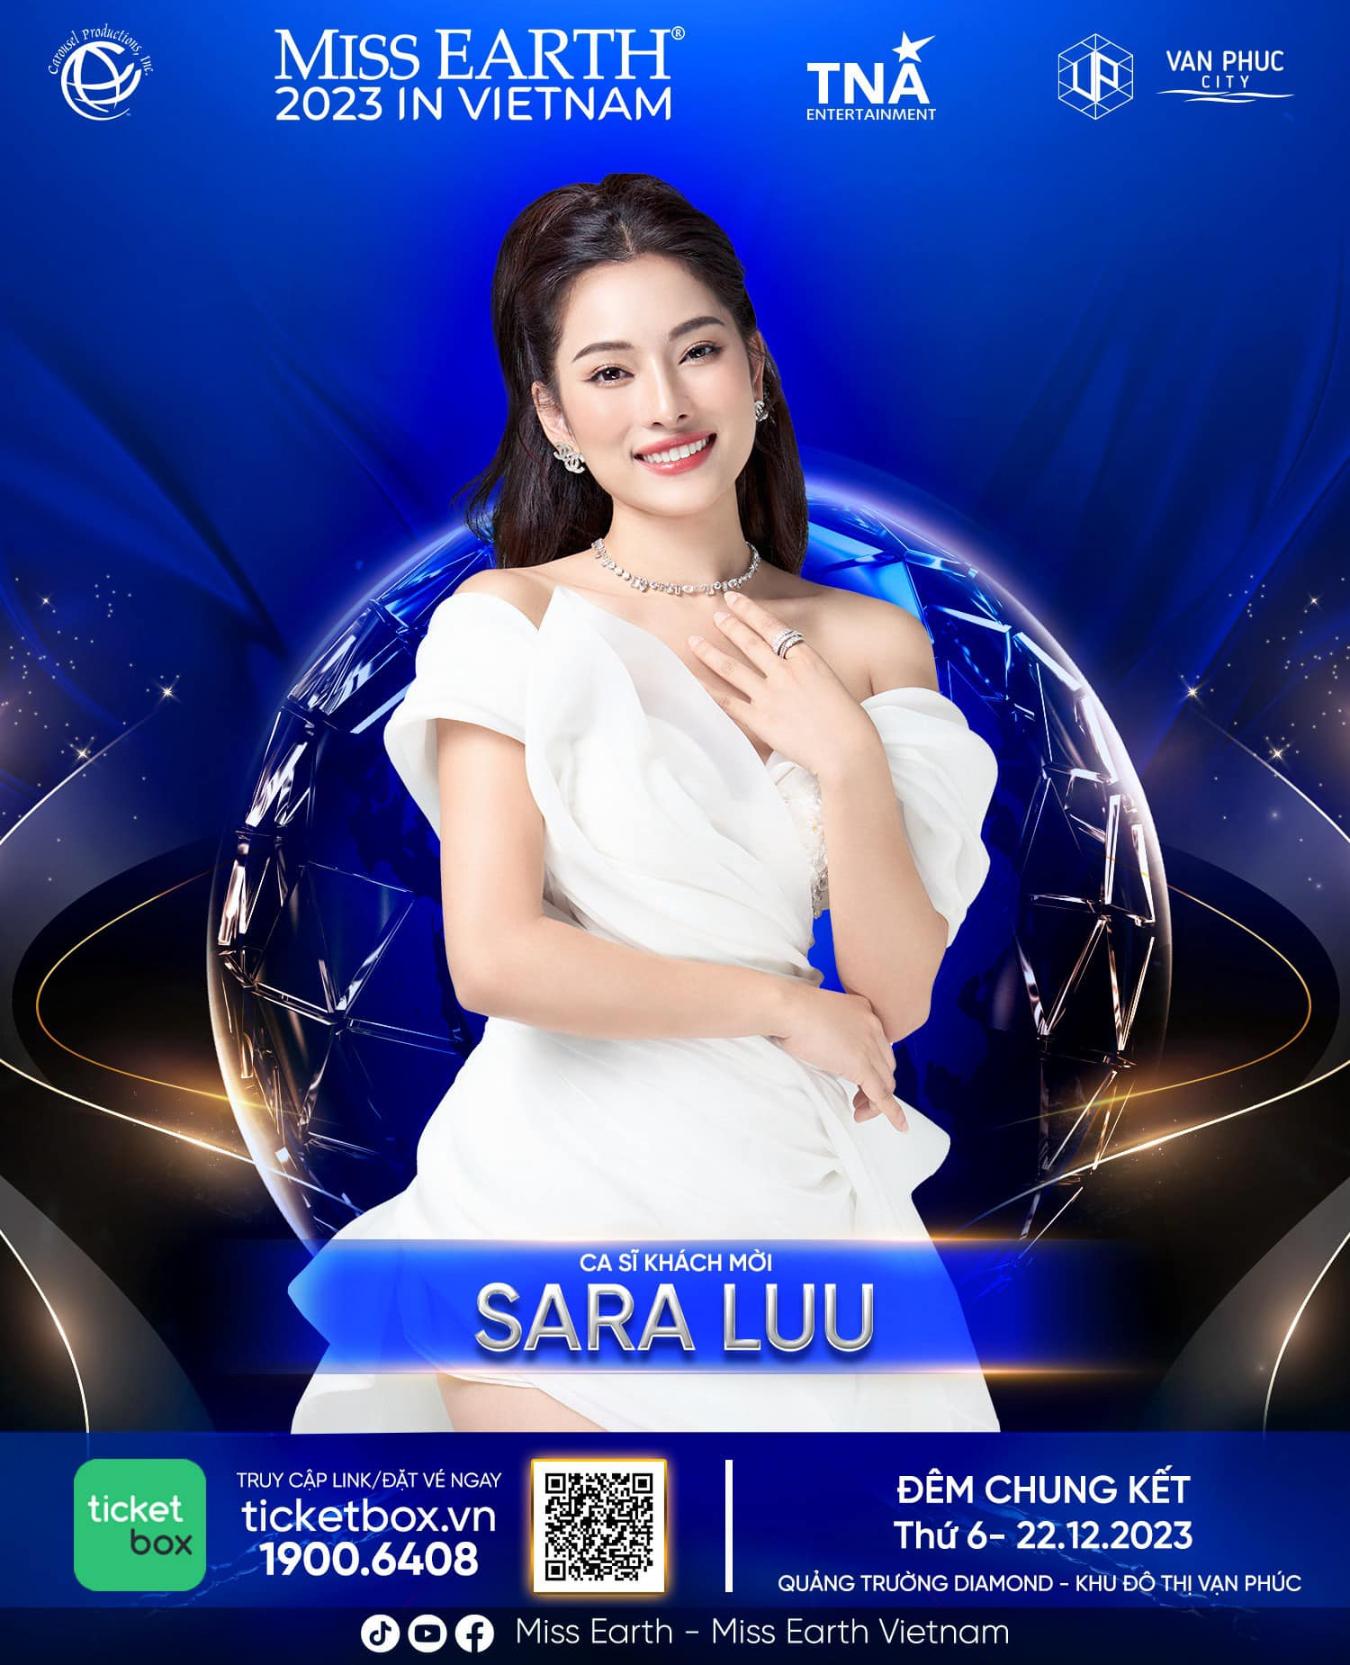 4. Sara Luu Hé lộ dàn nghệ sĩ trình diễn trong chung kết Miss Earth 2023